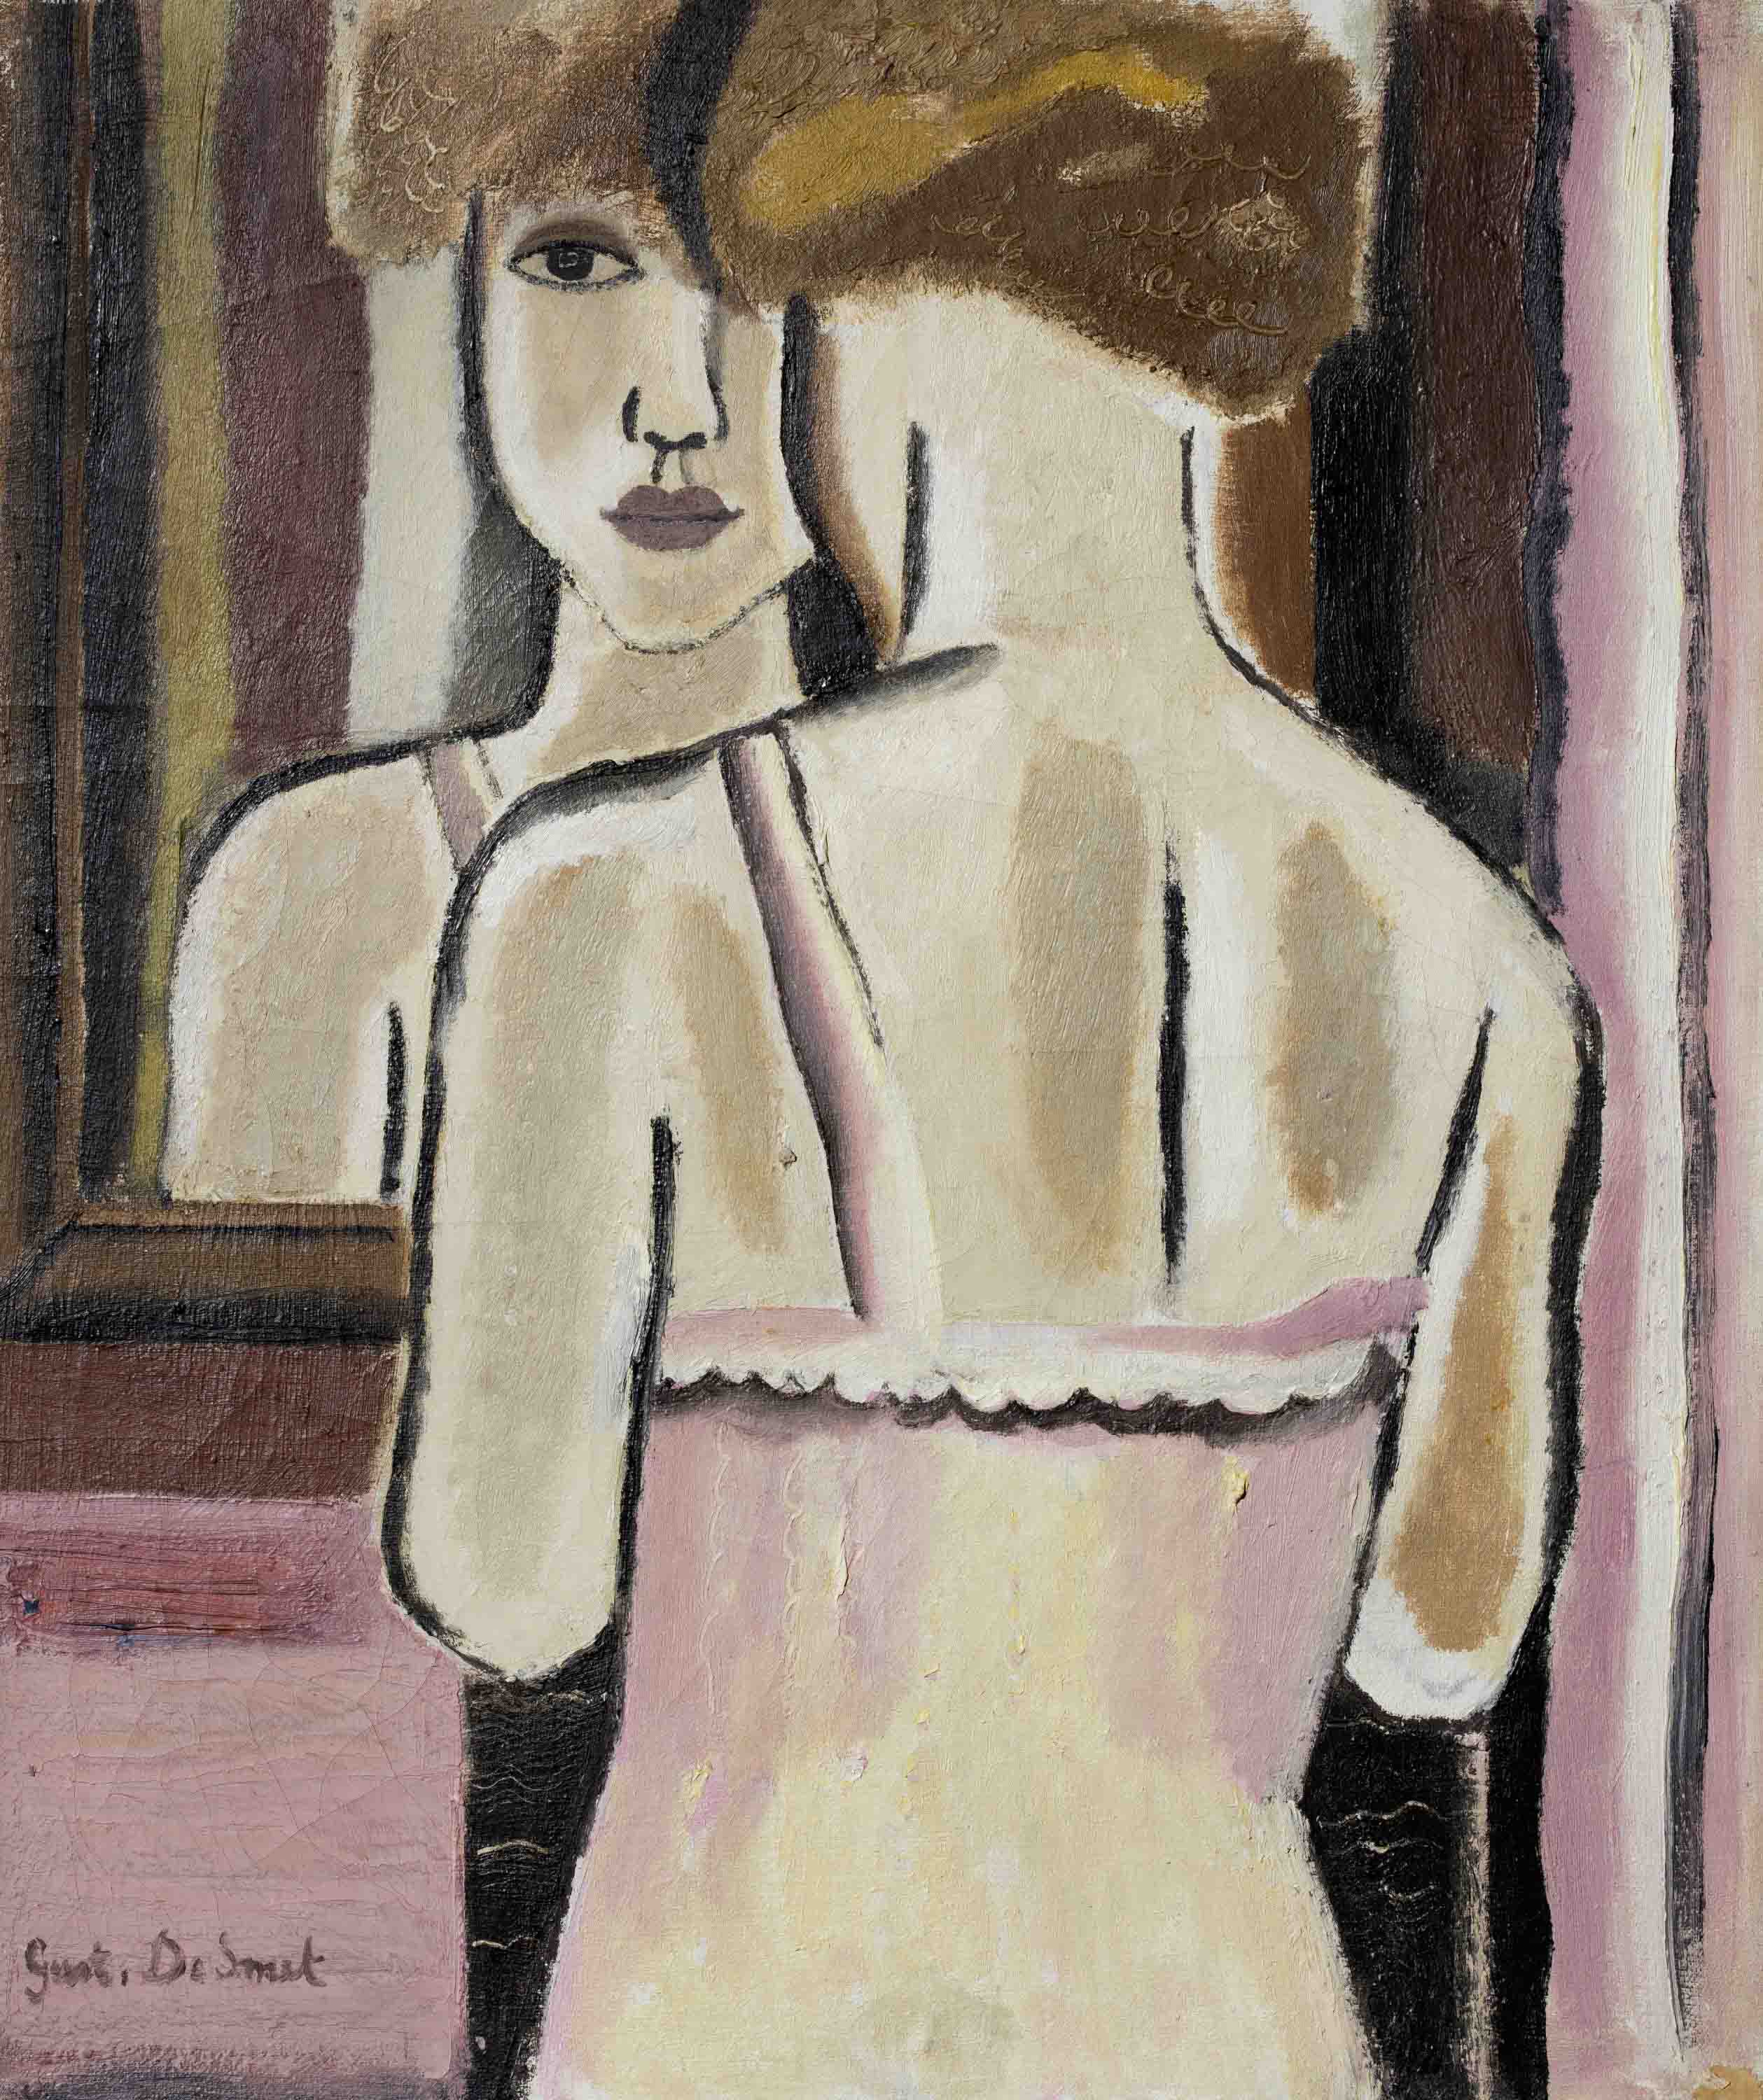 Vrouw in de spiegel - Gustave de Smet